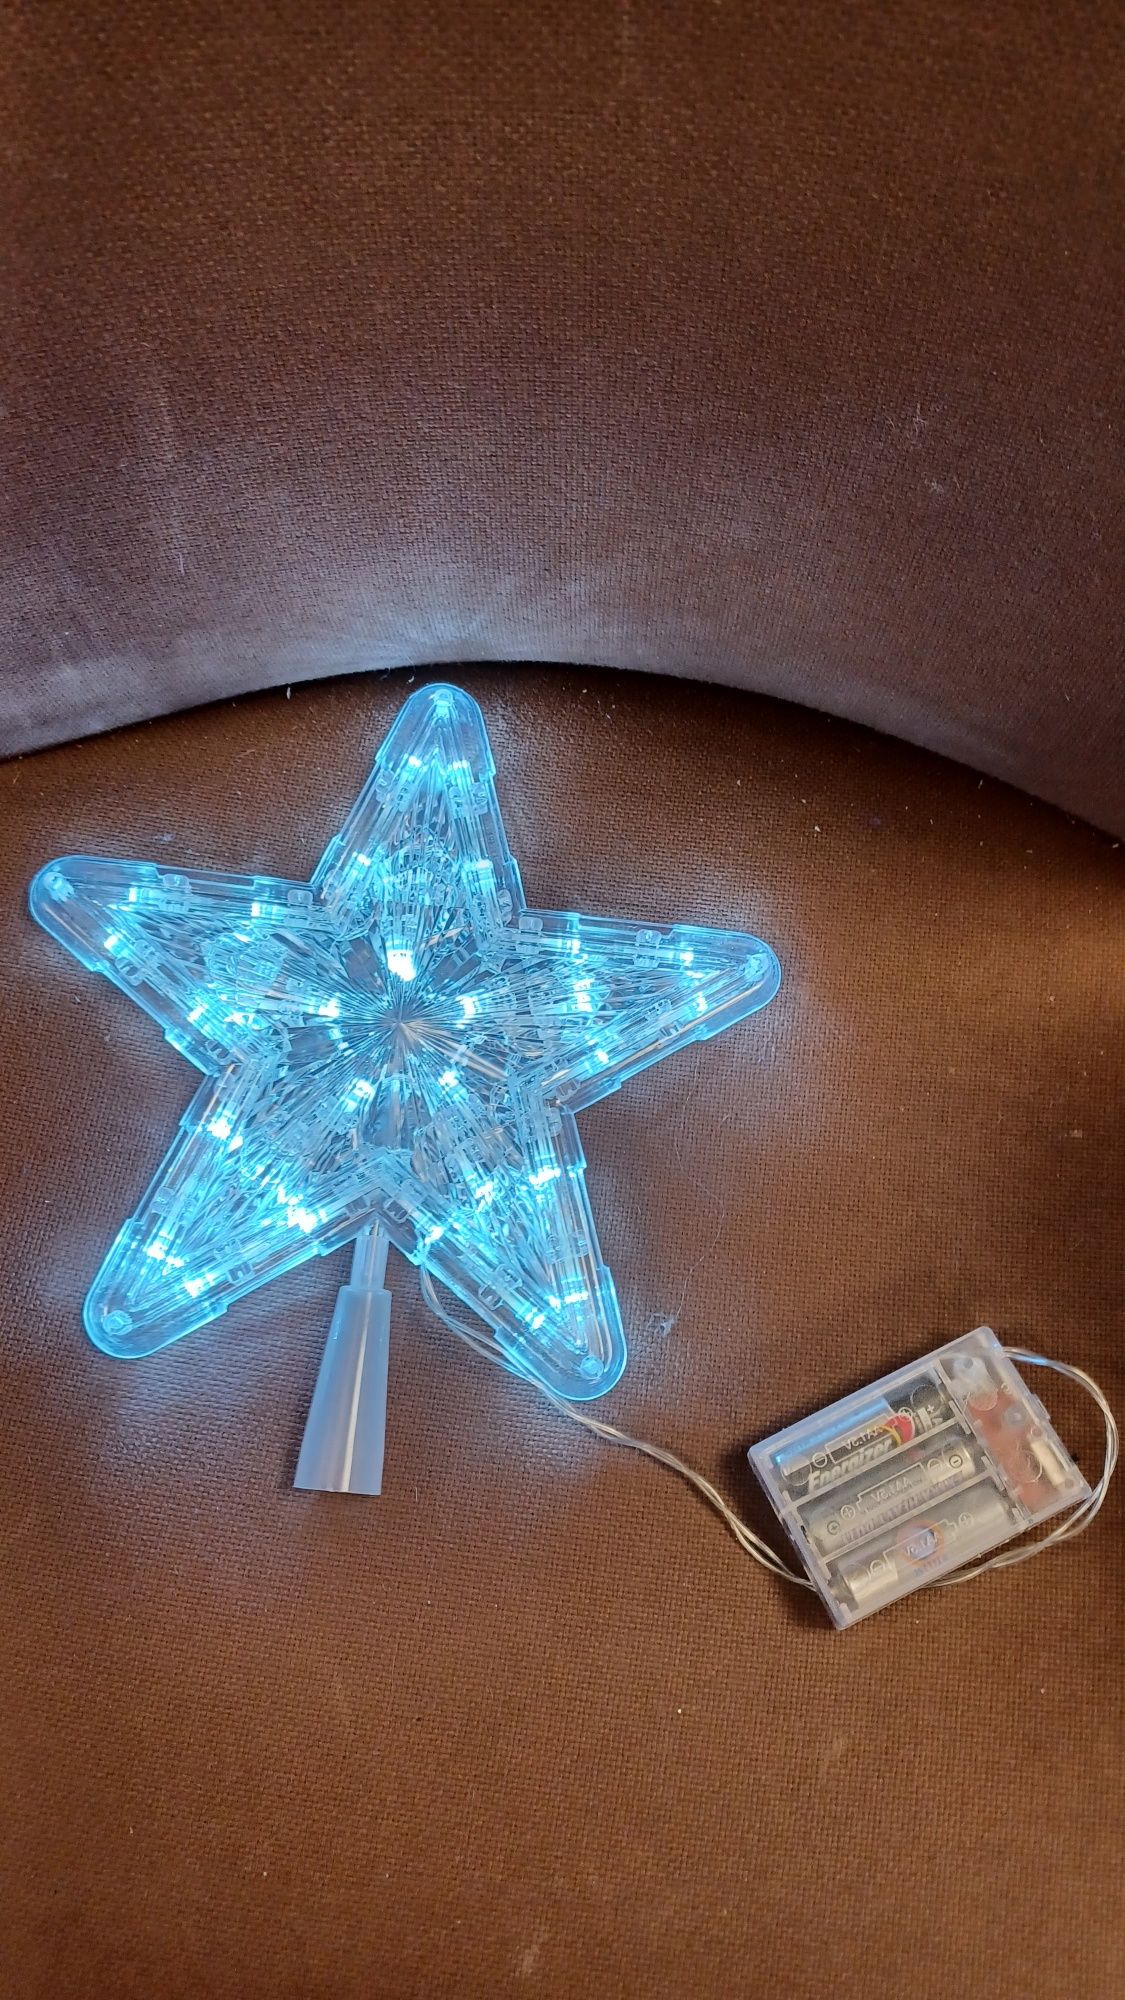 Podświetlany toper choinkowy gwiazda Wbudowane diody LED czubek choink